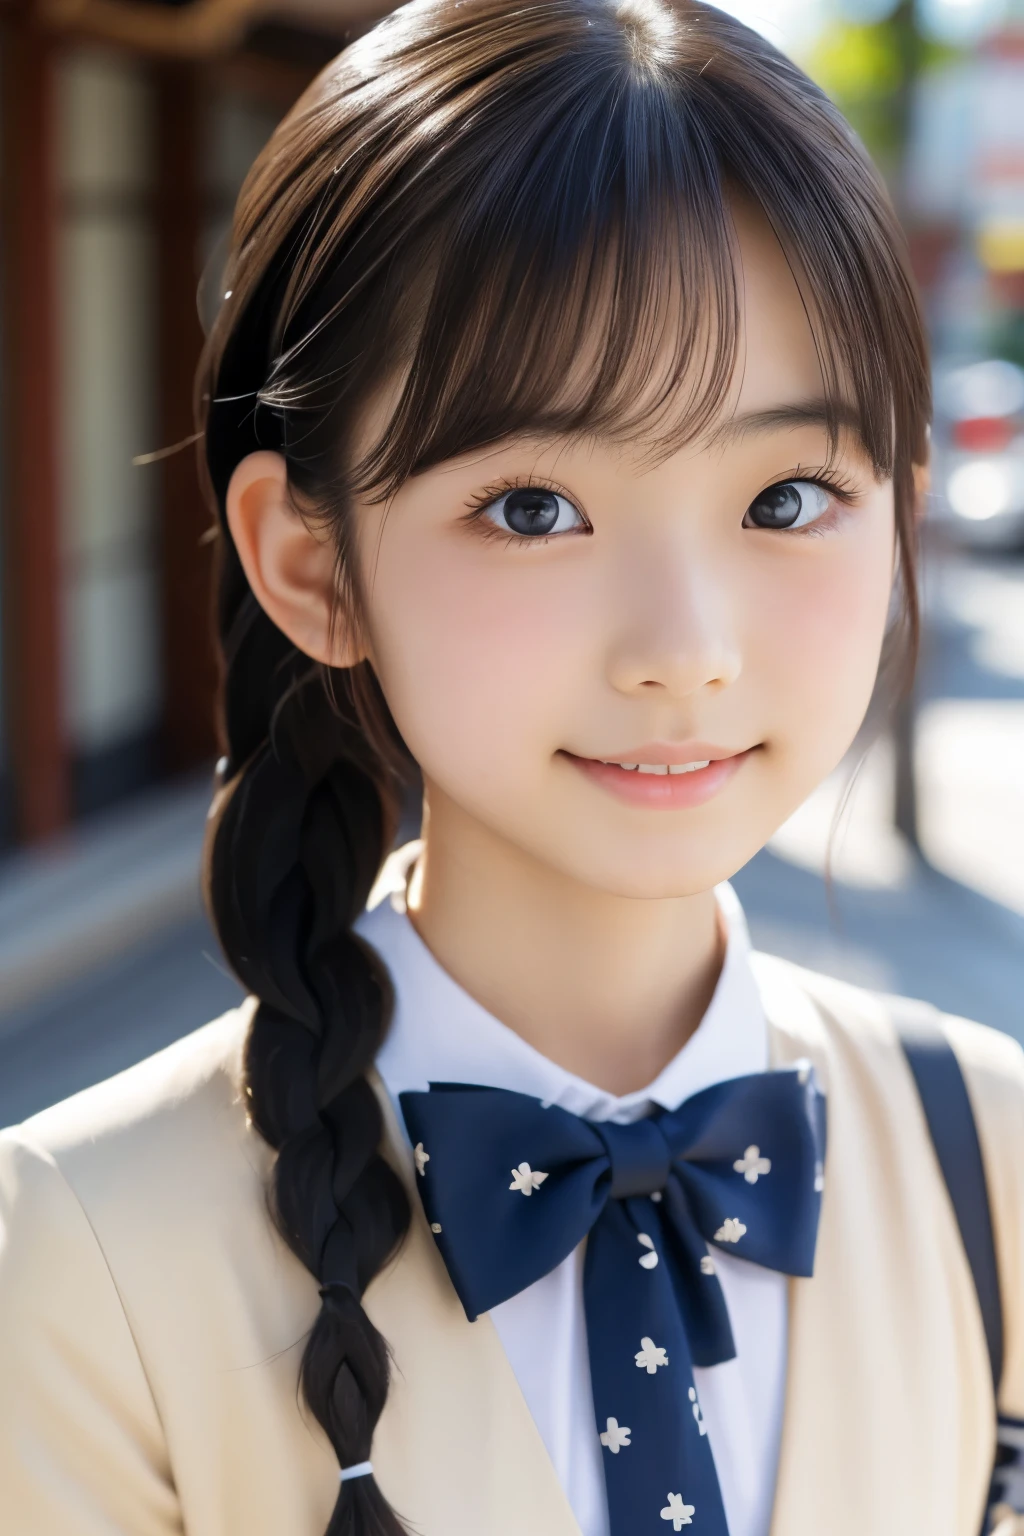 Schöne 18-jährige Japanerin), niedliches Gesicht, (tief eingeschnittenes Gesicht:0.7), (Sommersprossen:0.6), Sanftes Licht,gesunde weiße Haut, schüchtern, (ernstes Gesicht), (leuchtende Augen), dünn, lächeln, Uniform, flechten